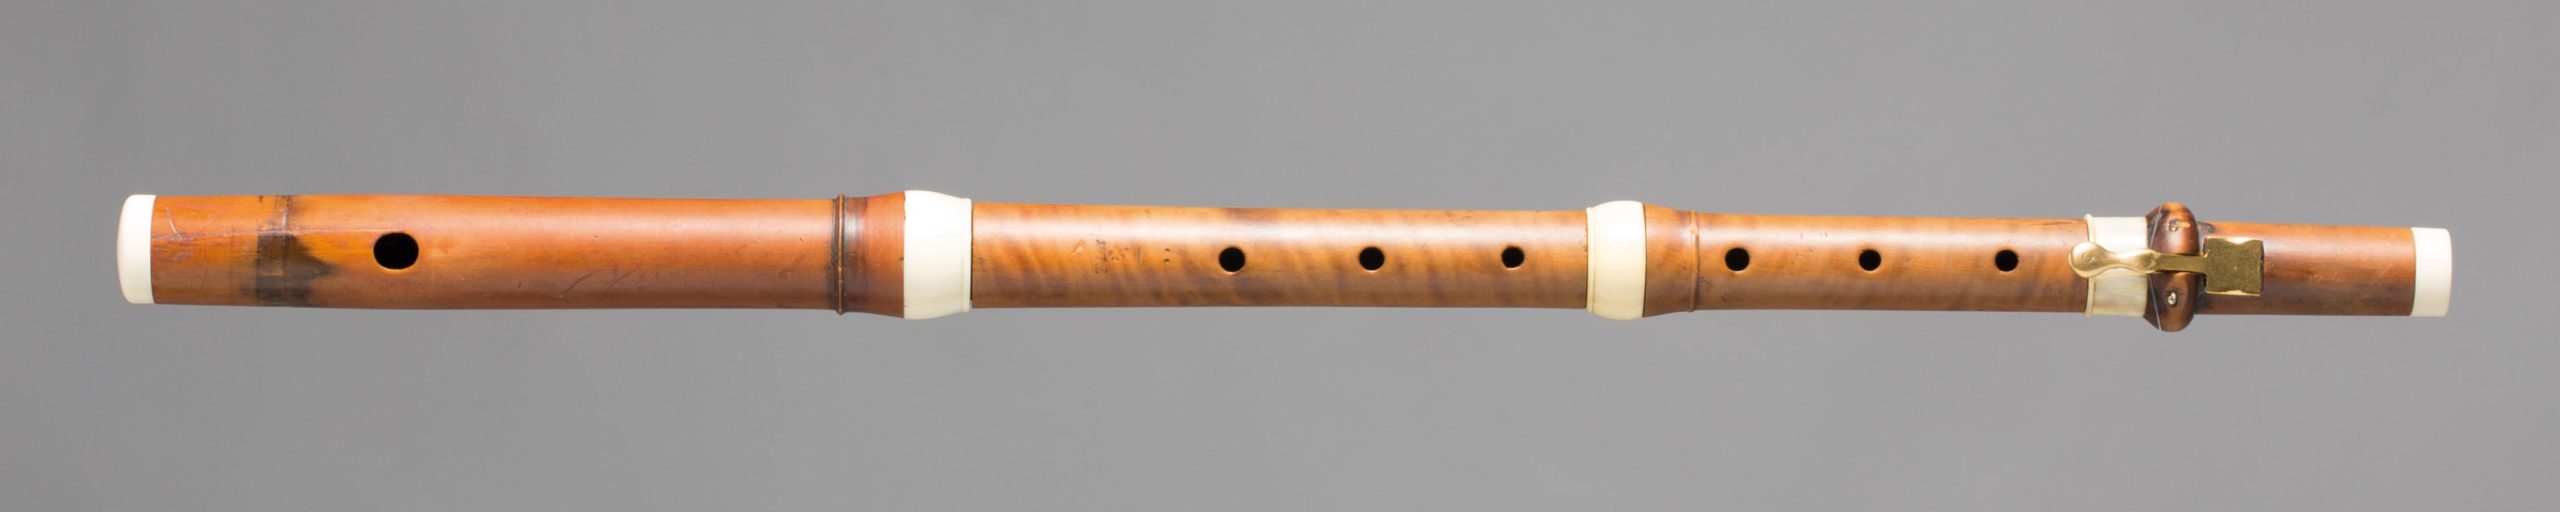 Flûte en buis, une clef laiton refaite, bagues ivoire dont certaines refaites, estampillée Thomas LOT avec lion rampant. XVIIIème